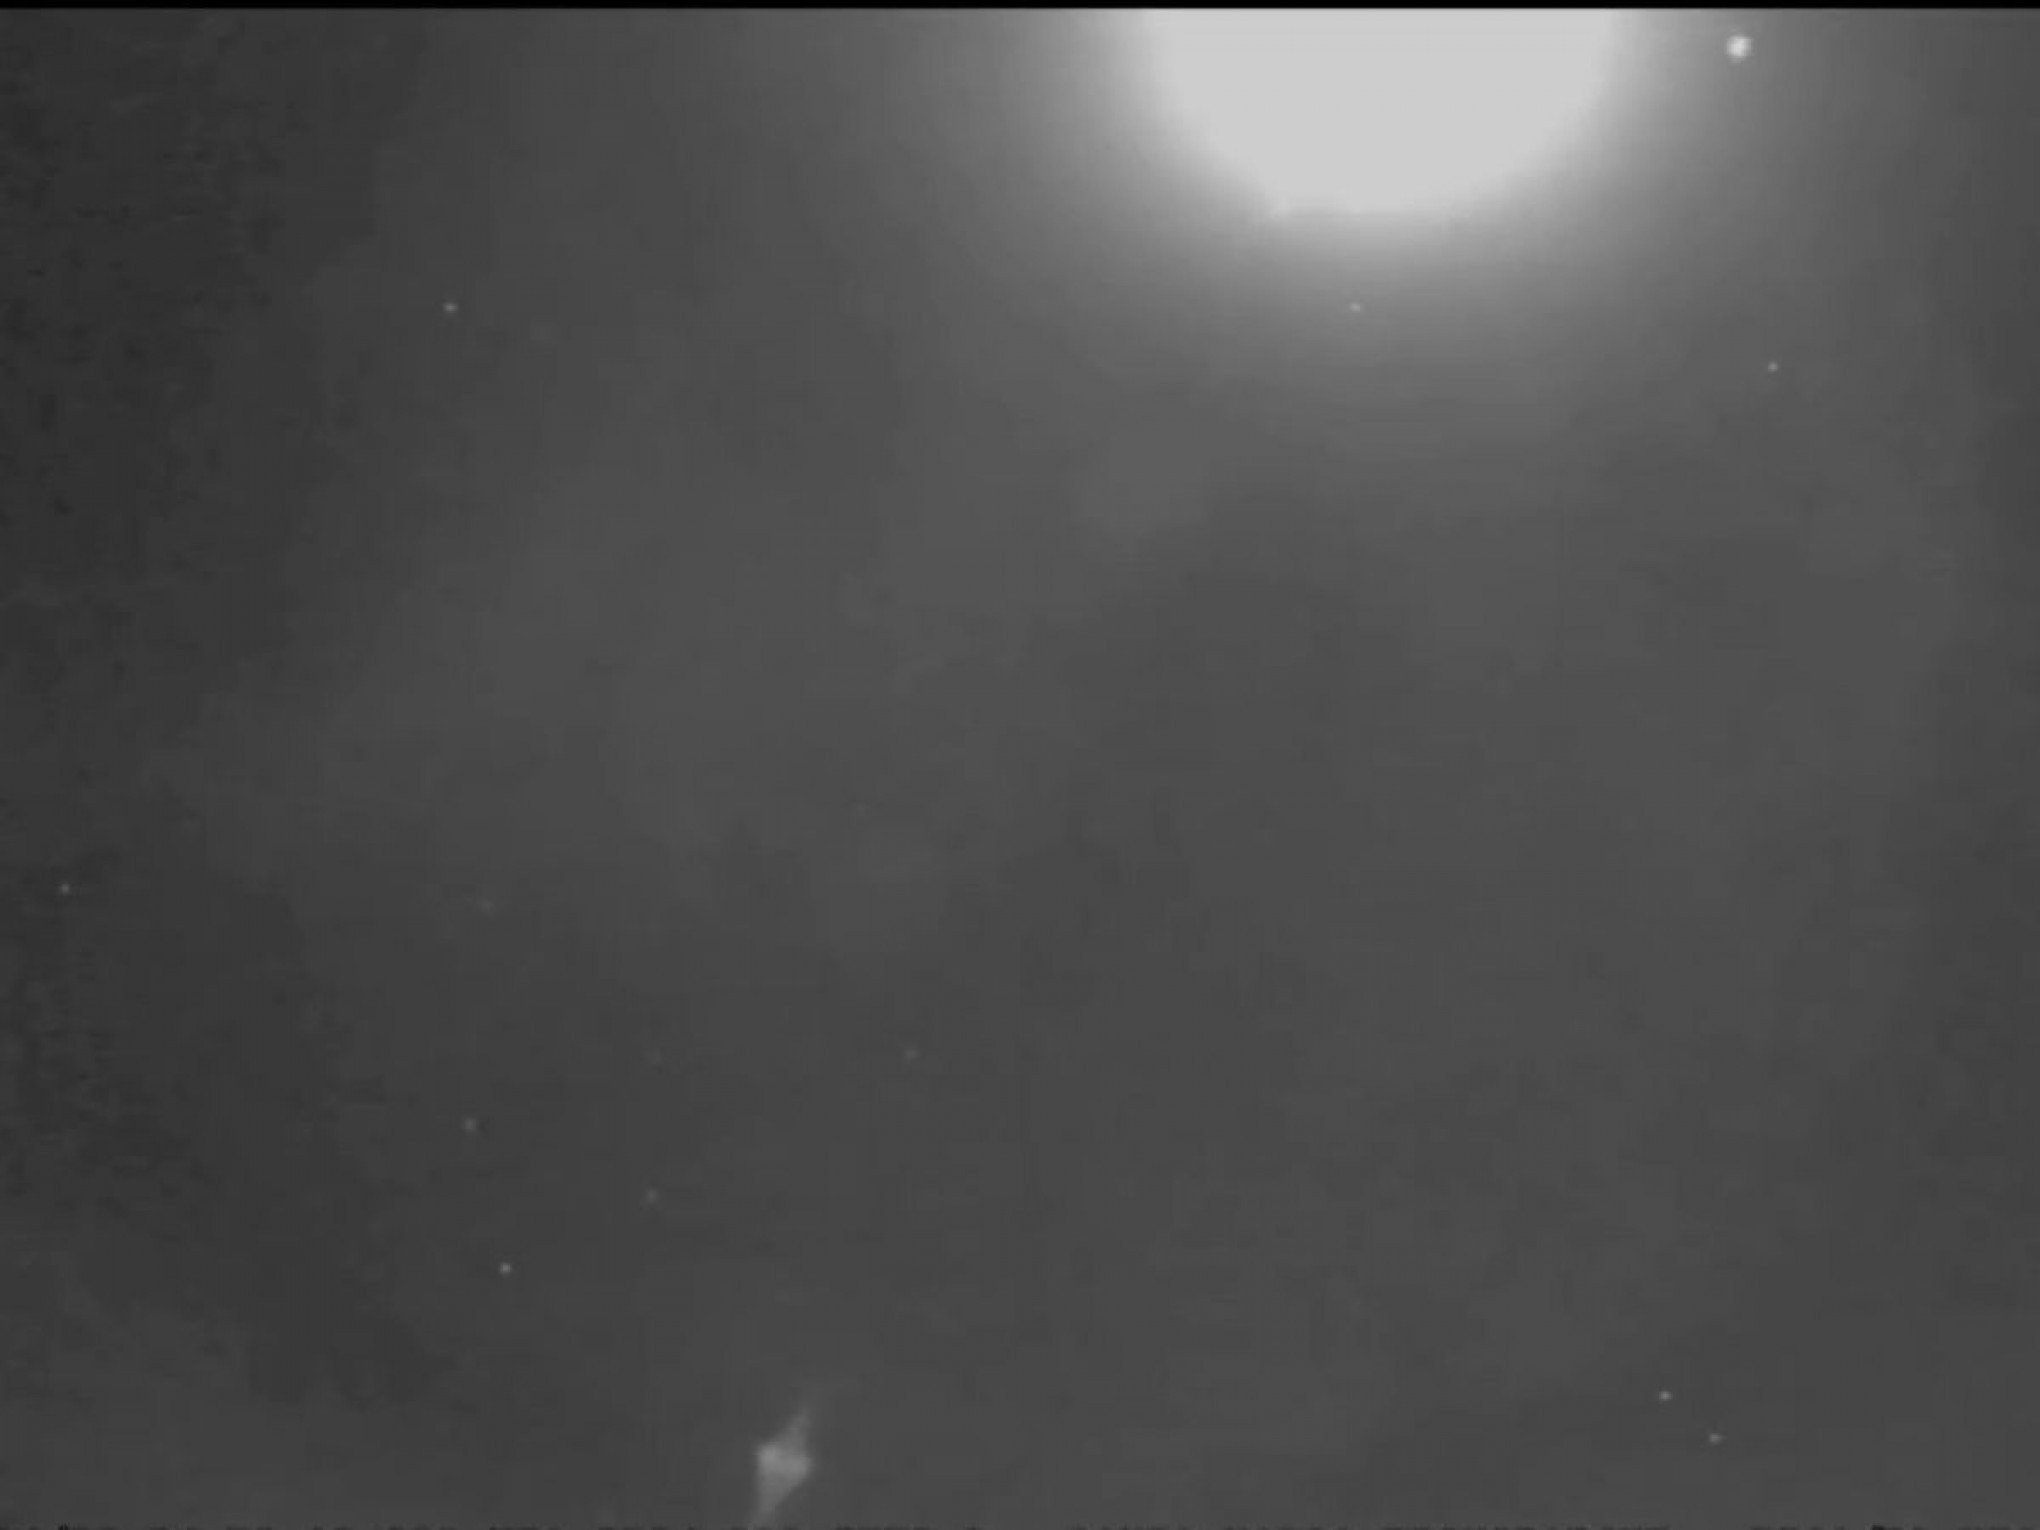 VÍDEO: Imagens mostram Lua "atacando" a Terra em momento curioso; entenda o fenômeno